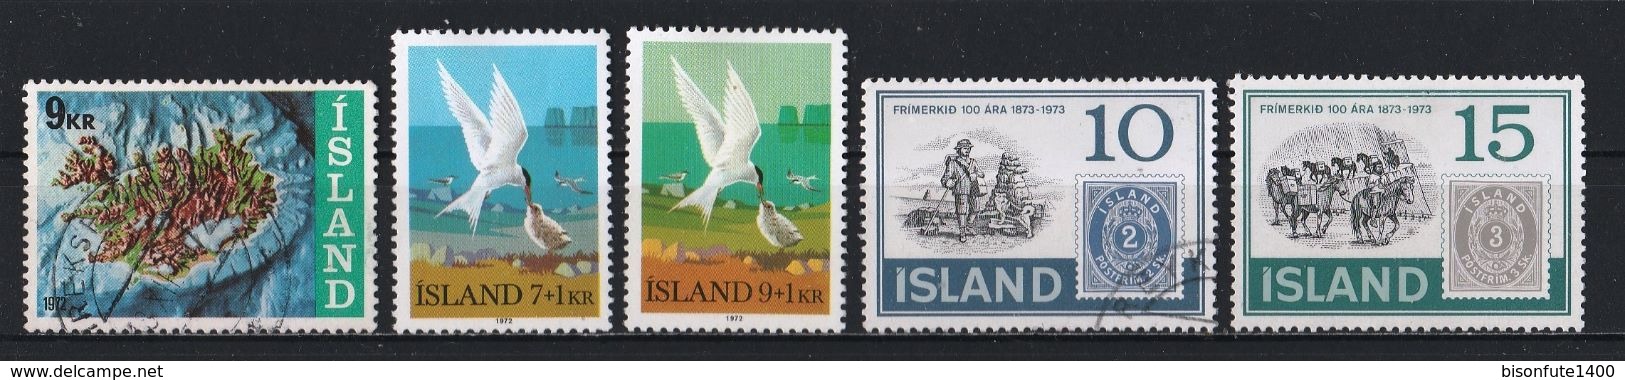 Petite collection de timbres ISLANDE oblitérés proposé au 1/10ème de la Cote Yvert & Tellier 2015 (voir les 29 photos)